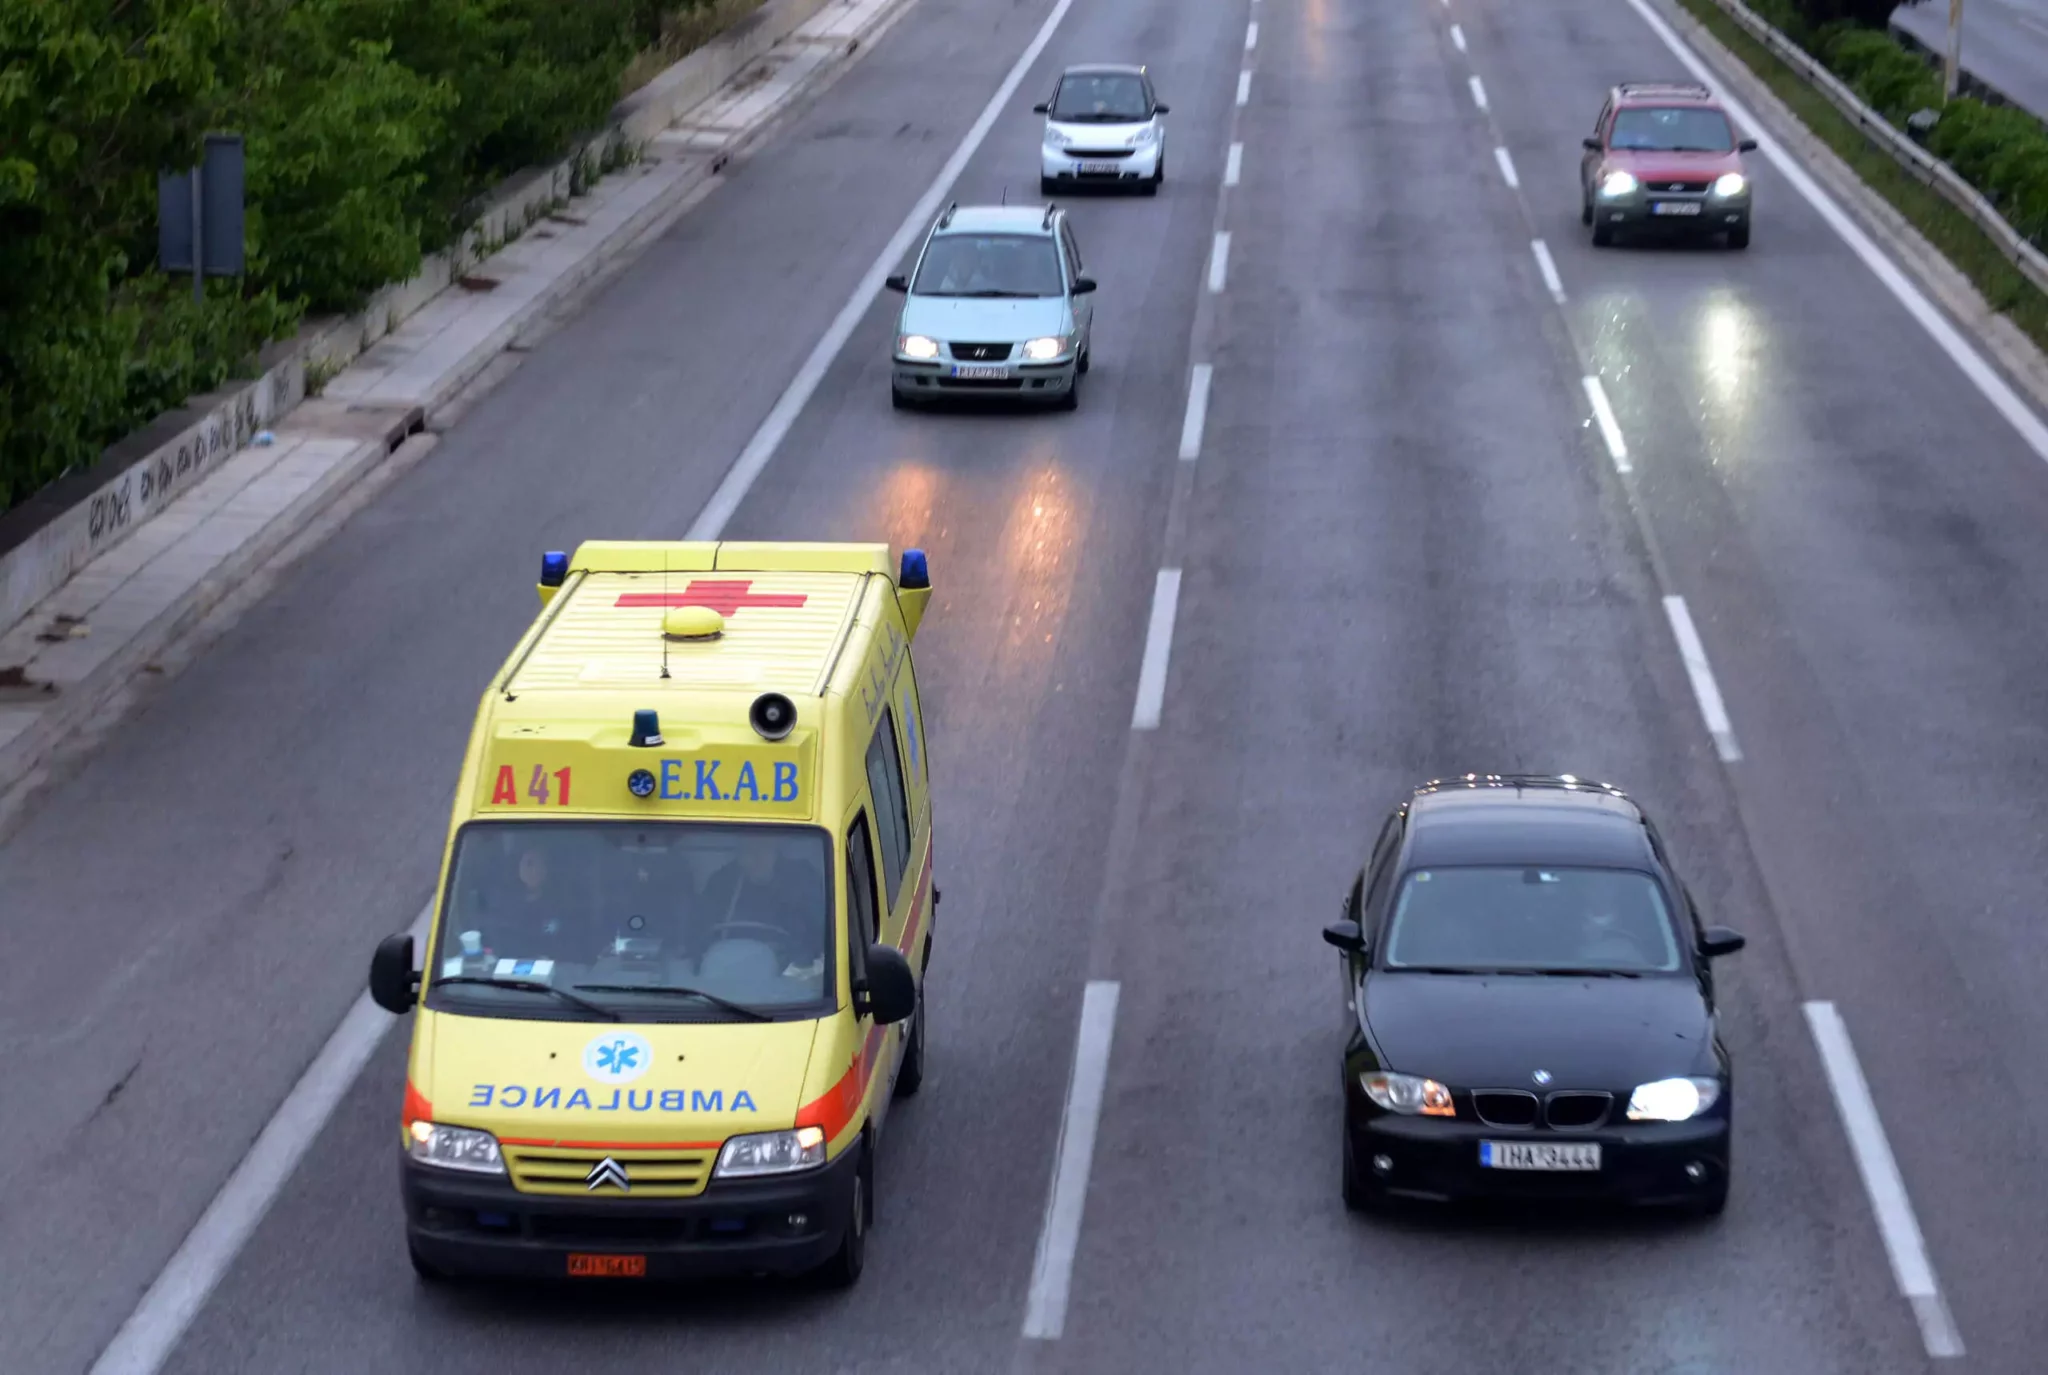 Εργατικό δυστύχημα στη Θεσσαλονίκη: Σκοτώθηκε 39χρονος σε εταιρεία στο Καλοχώρι